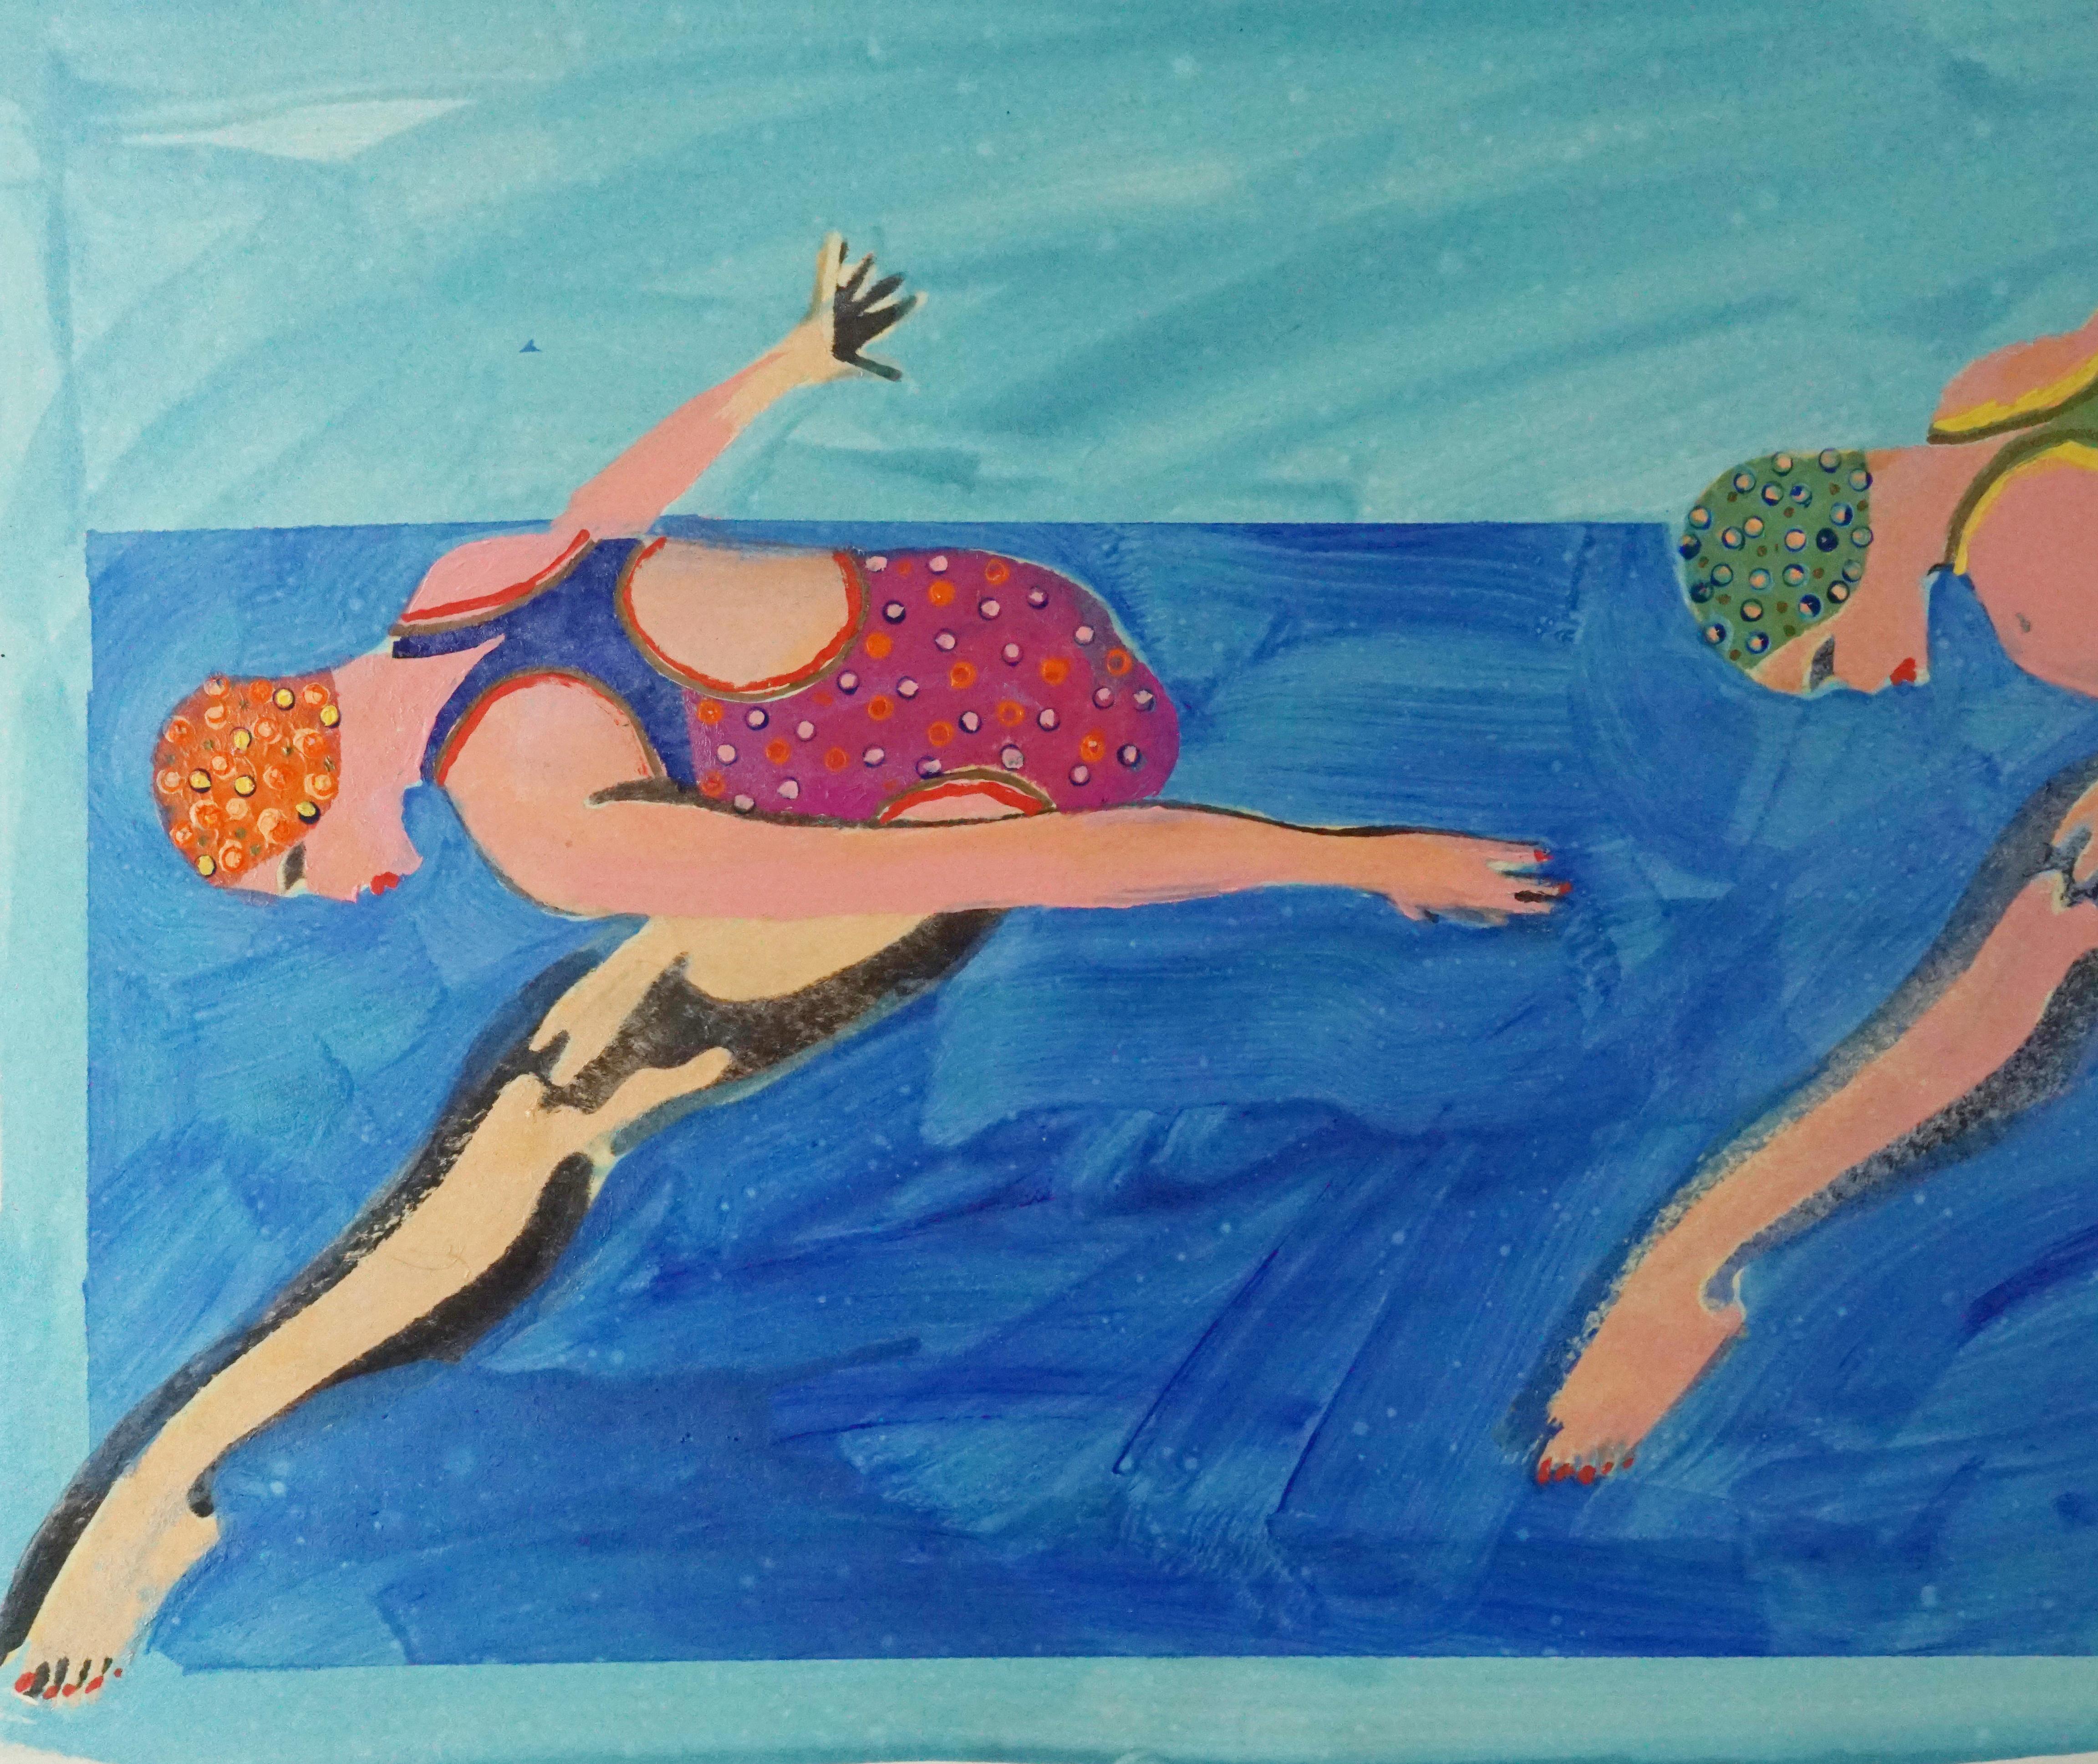 Synchronisierte Swimmers, Pop Art, figurative abstrakte Skulptur auf Blau (Pop-Art), Painting, von Marc Foster Grant